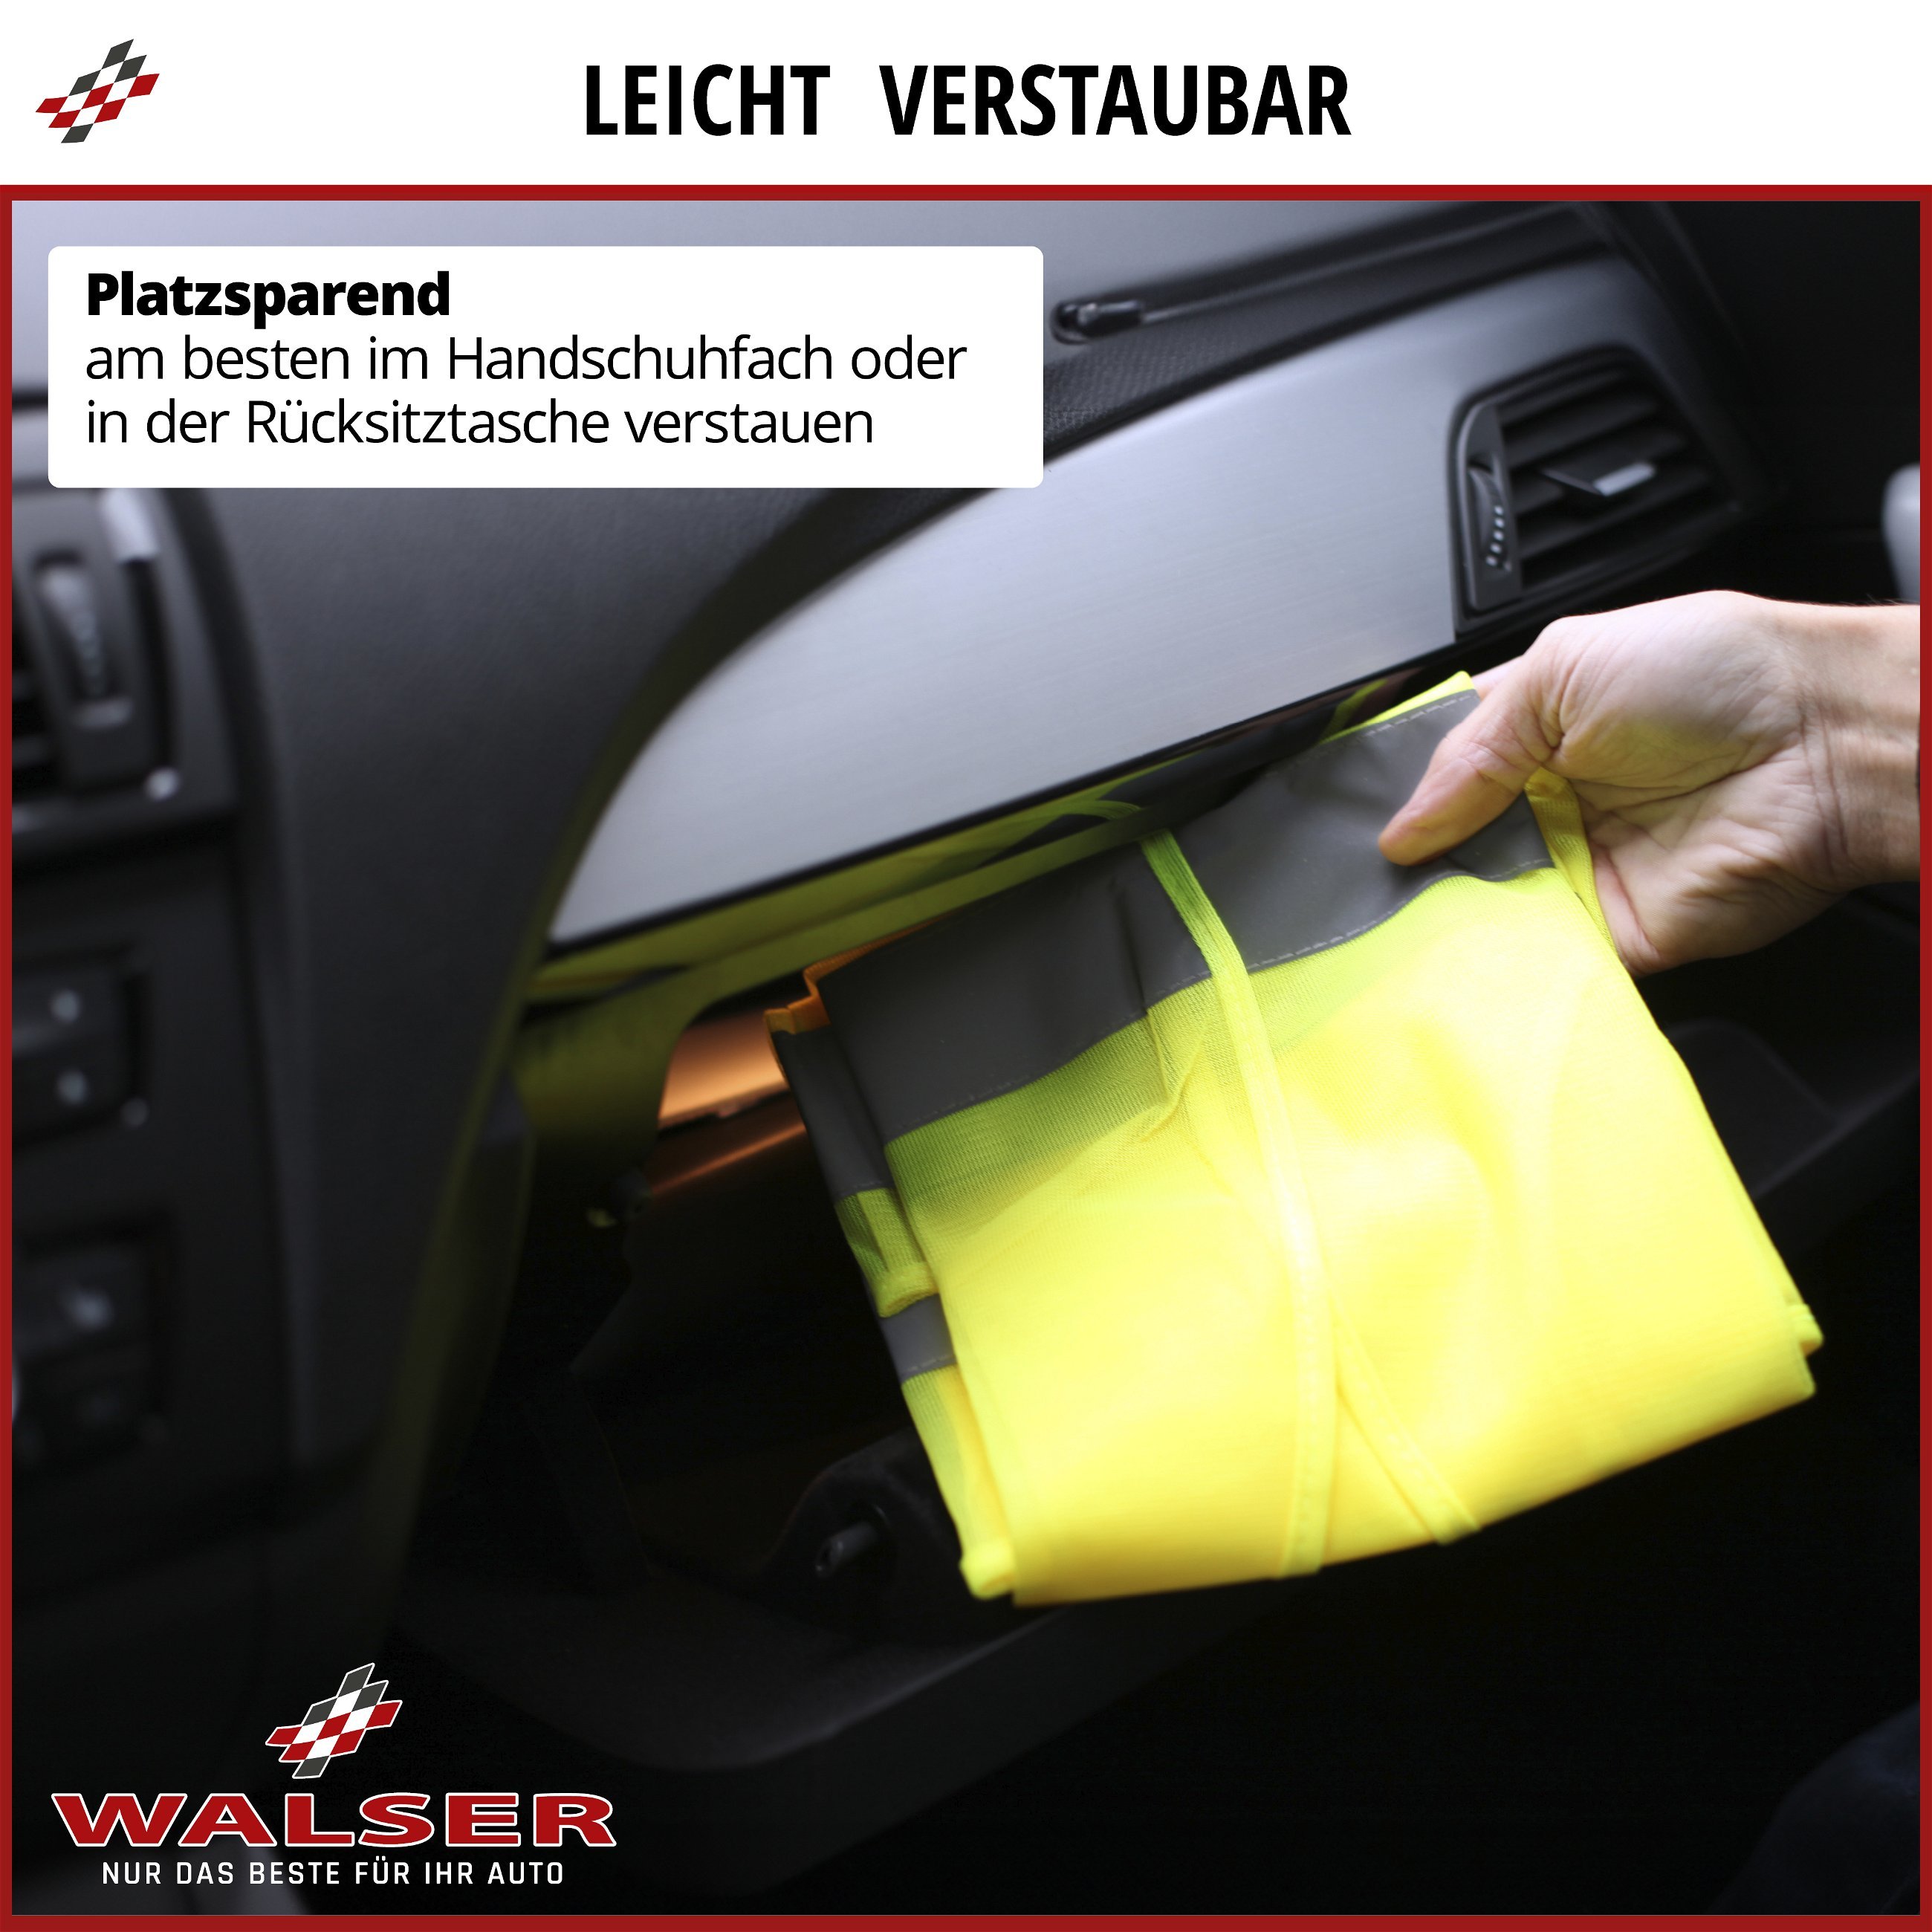 Sicherheitsweste, Warnweste Auto nach Norm EN ISO 20471:2013, Schutzweste, Leuchtweste  Erwachsene unisex XXL (182-188 cm) gelb